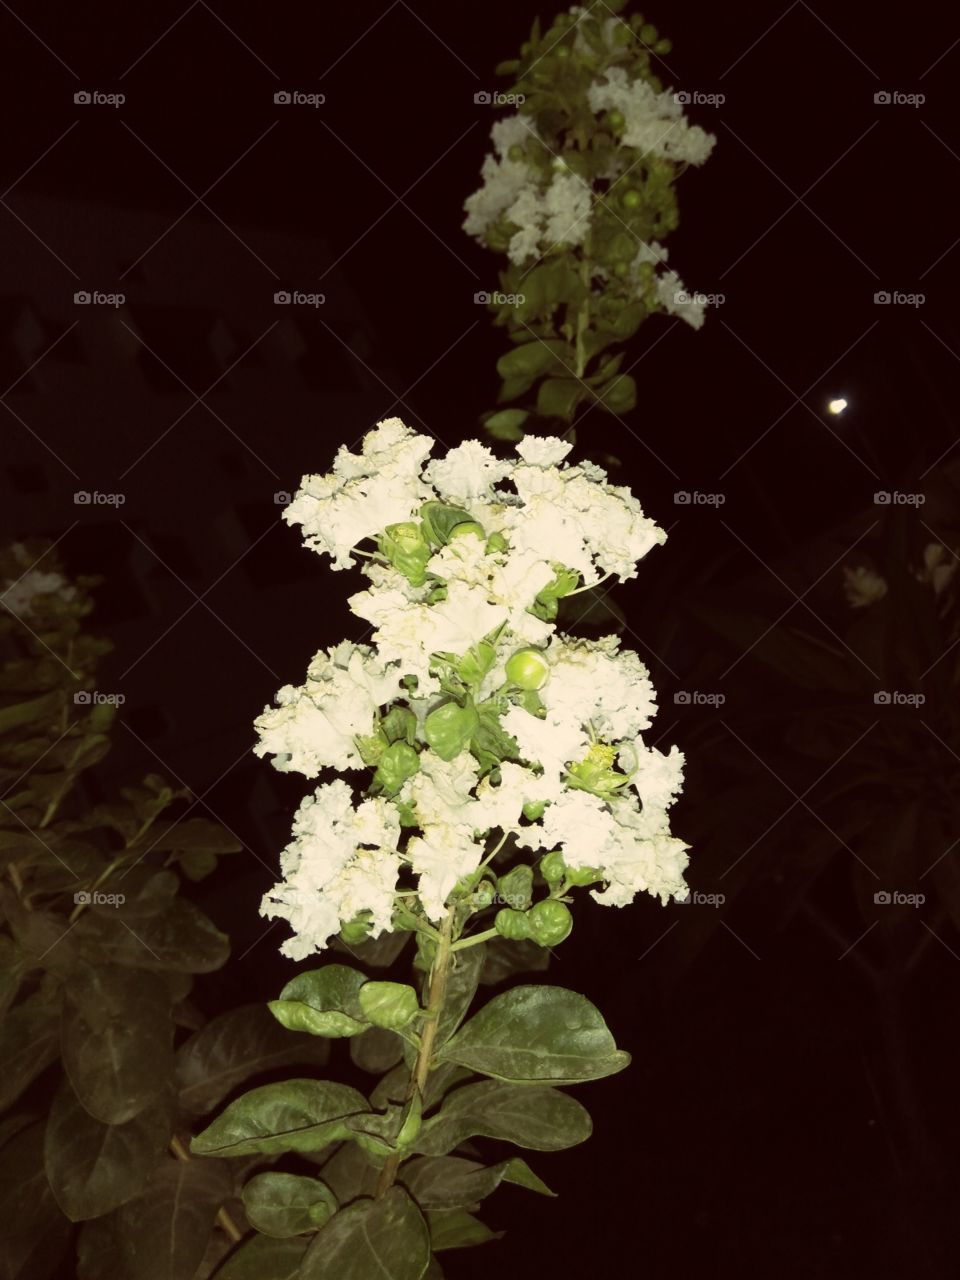 True purity.  White flowers looking very nice...